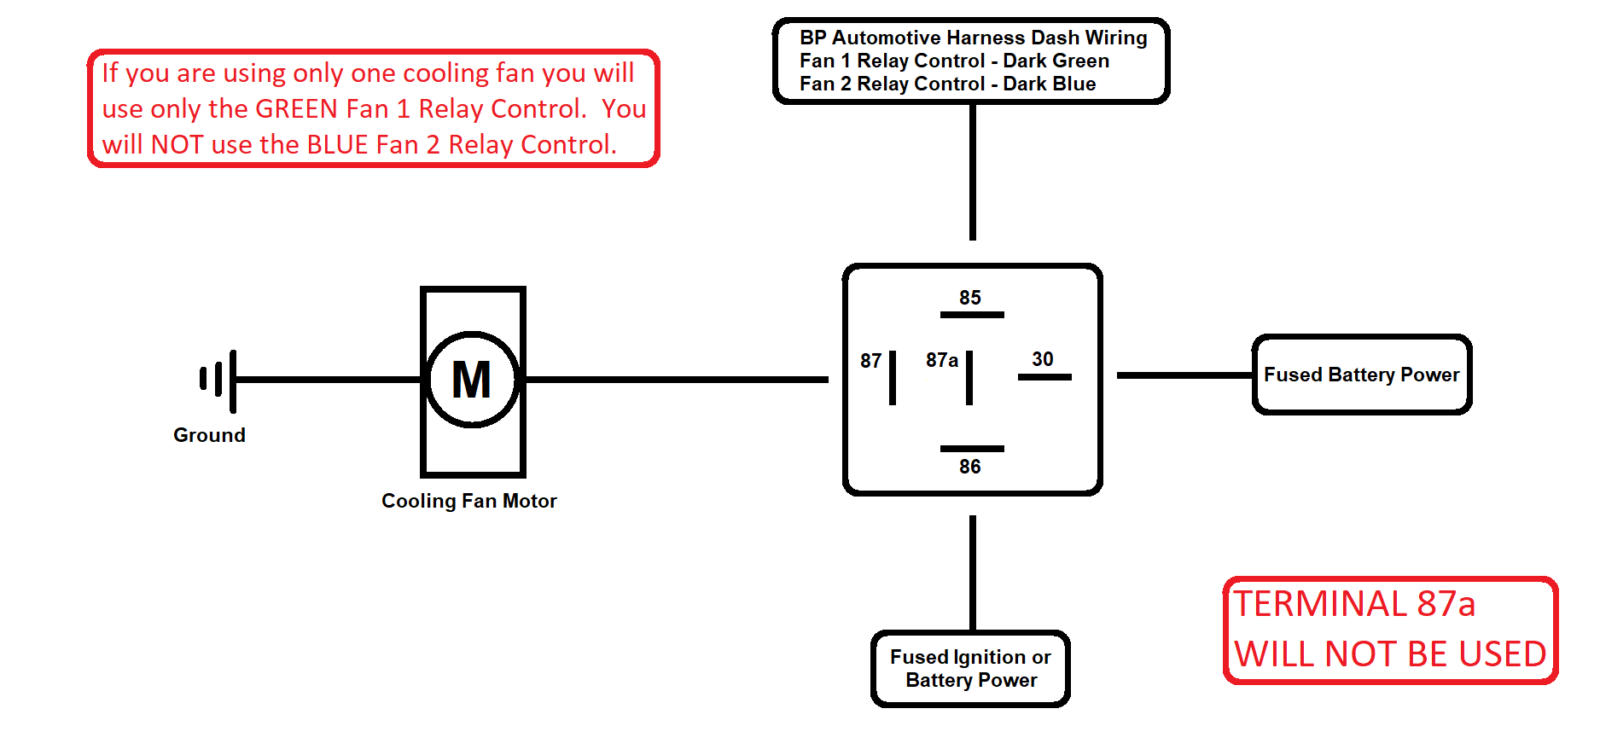 Ford Tauru Electric Fan Wiring Diagram - Wiring Diagram